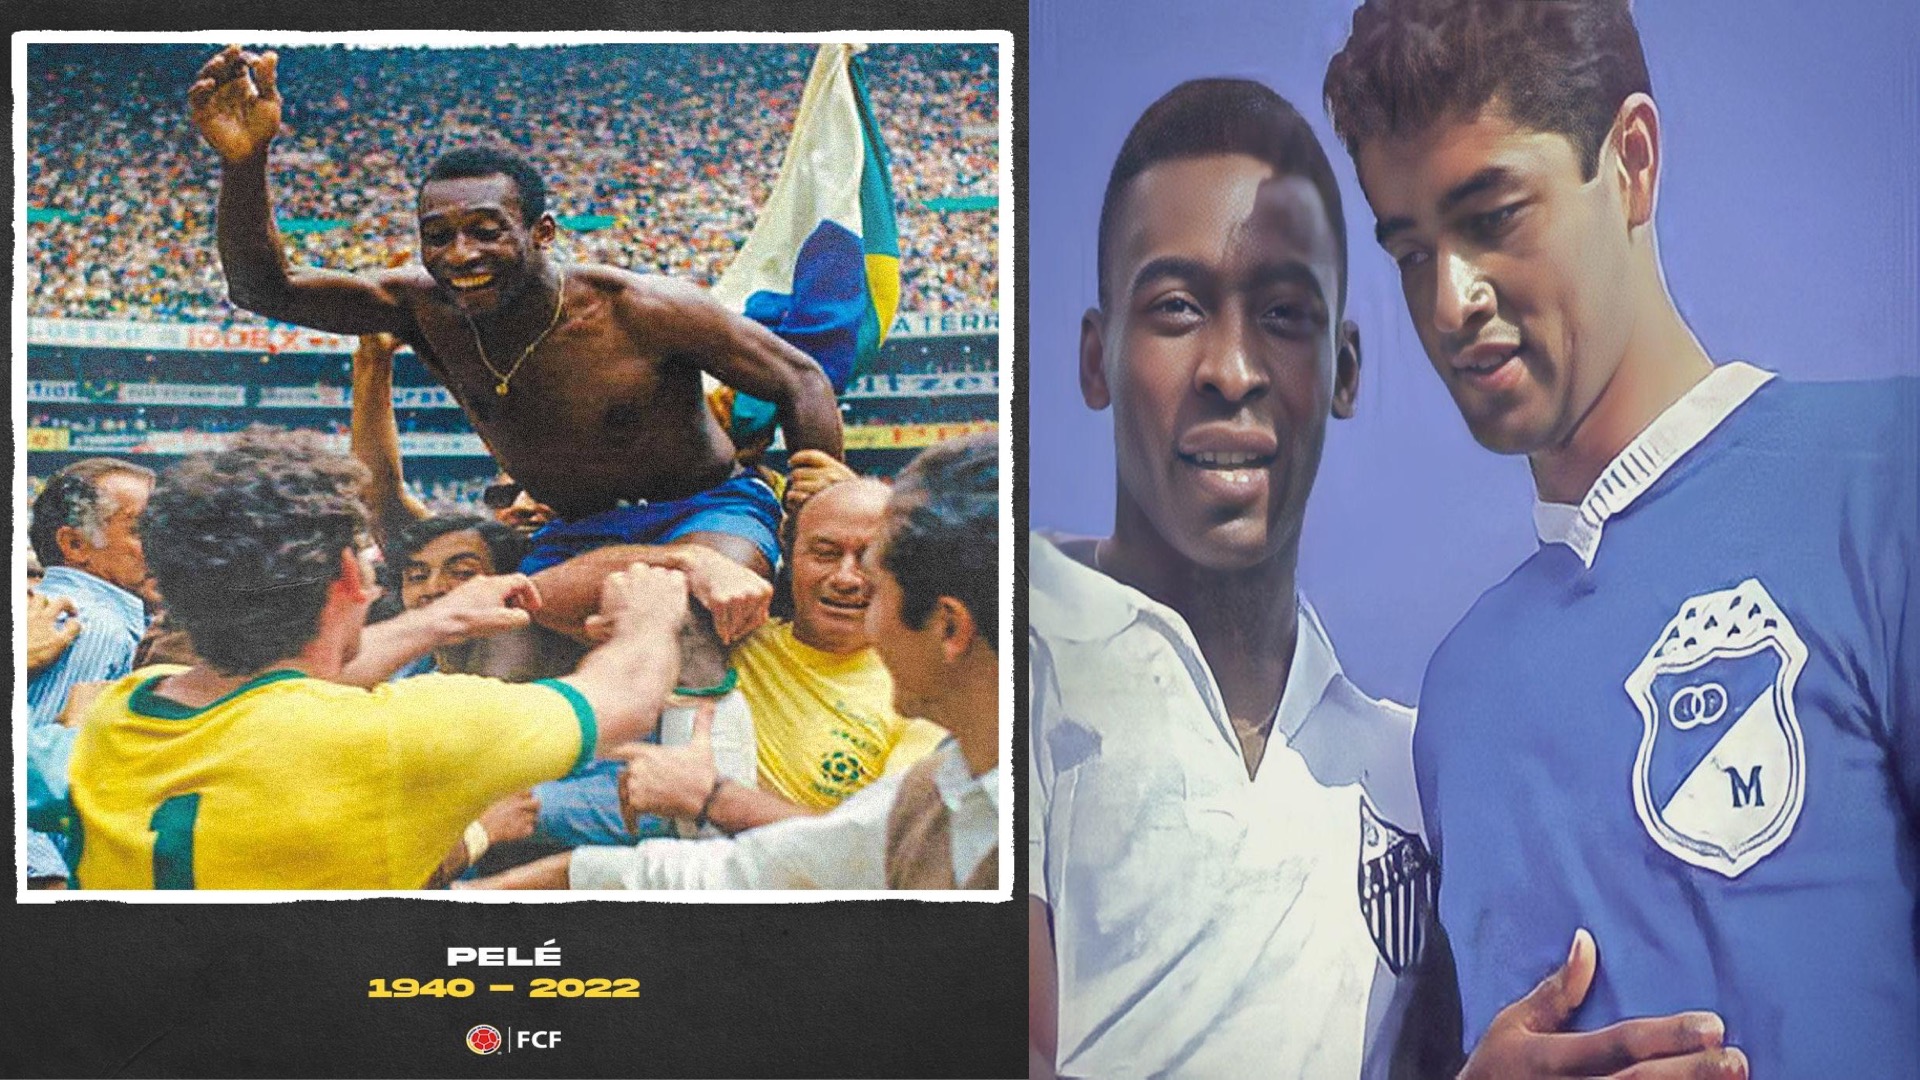 La Federación Colombiana de Fútbol envió sus condolencias por la muerte del Rey Pelé